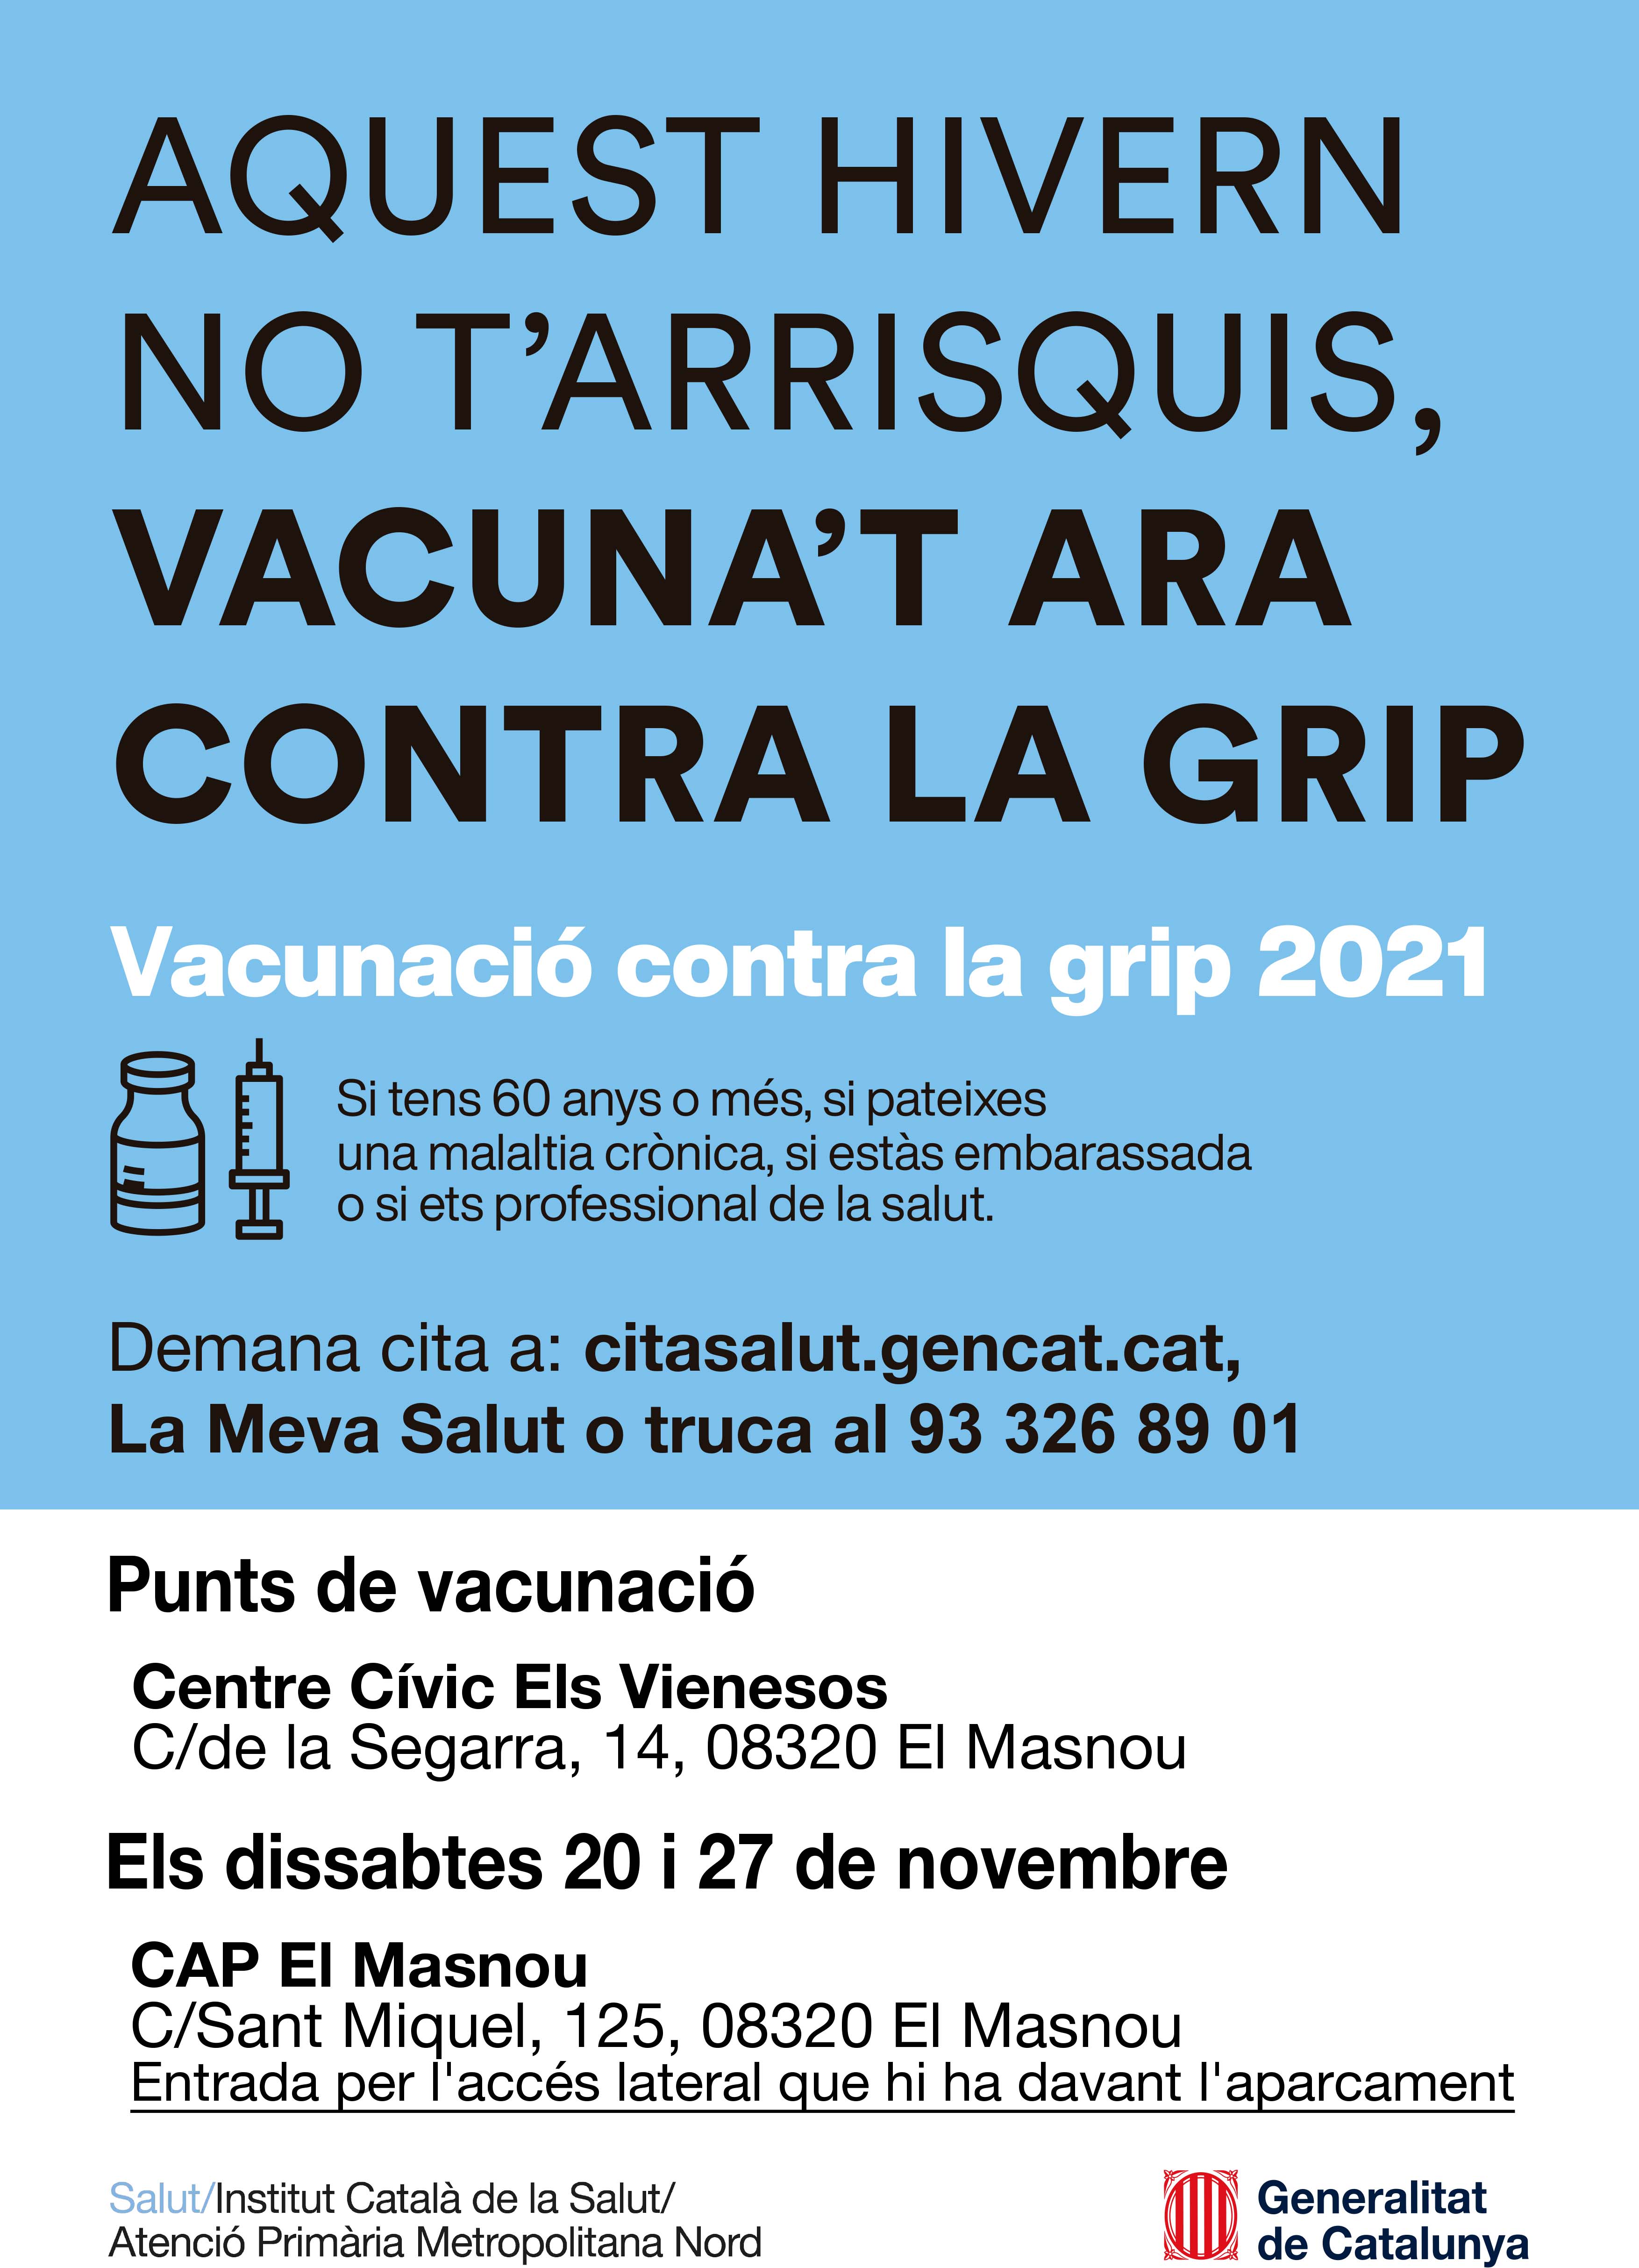 S'habilita el CAP El Masnou com a punt de vacunació contra la grip els dissabtes 20 i 27 de novembre